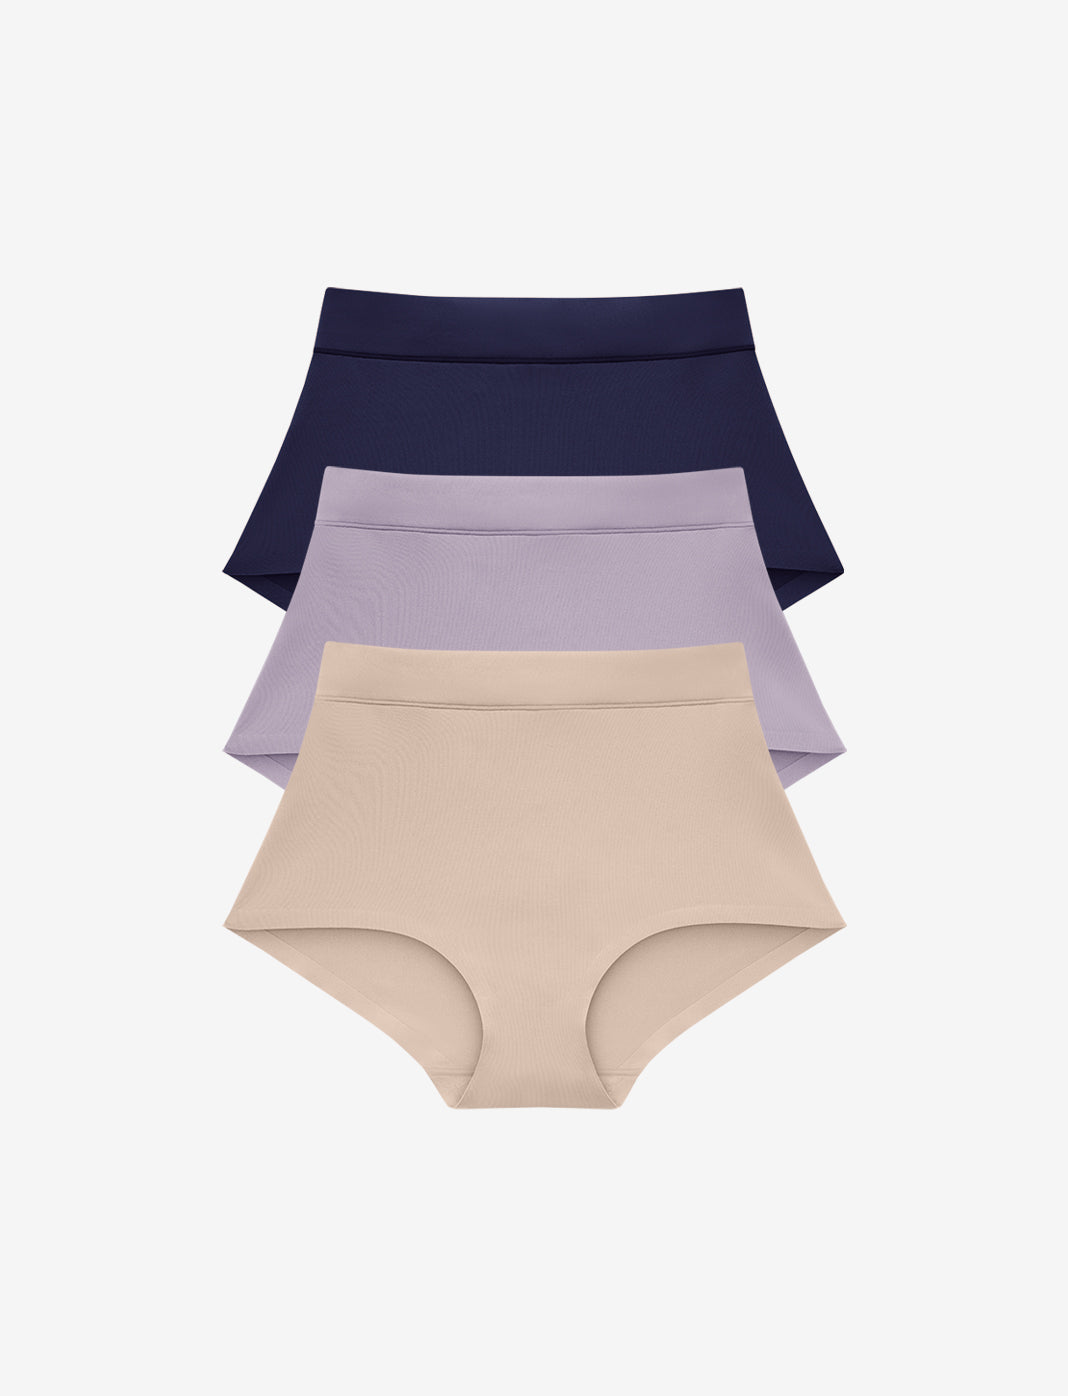 Shop Women’s Briefs - Best Comfort, Cotton, High Brief Underwear for ...